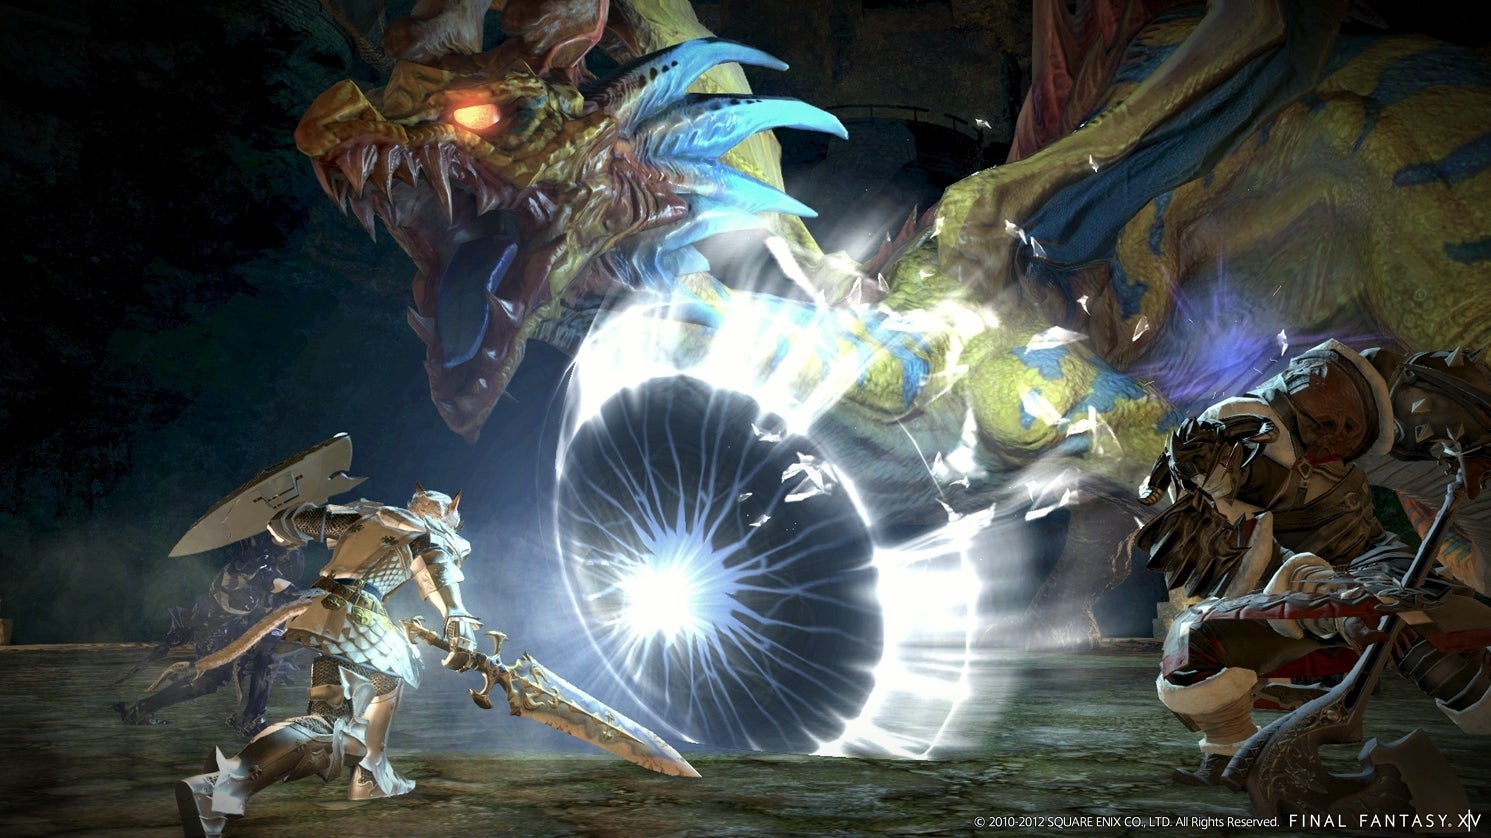 Immagine di Square Enix vorrebbe portare Final Fantasy XIV su Xbox One e Switch, con cross platform play con PS4 e PC